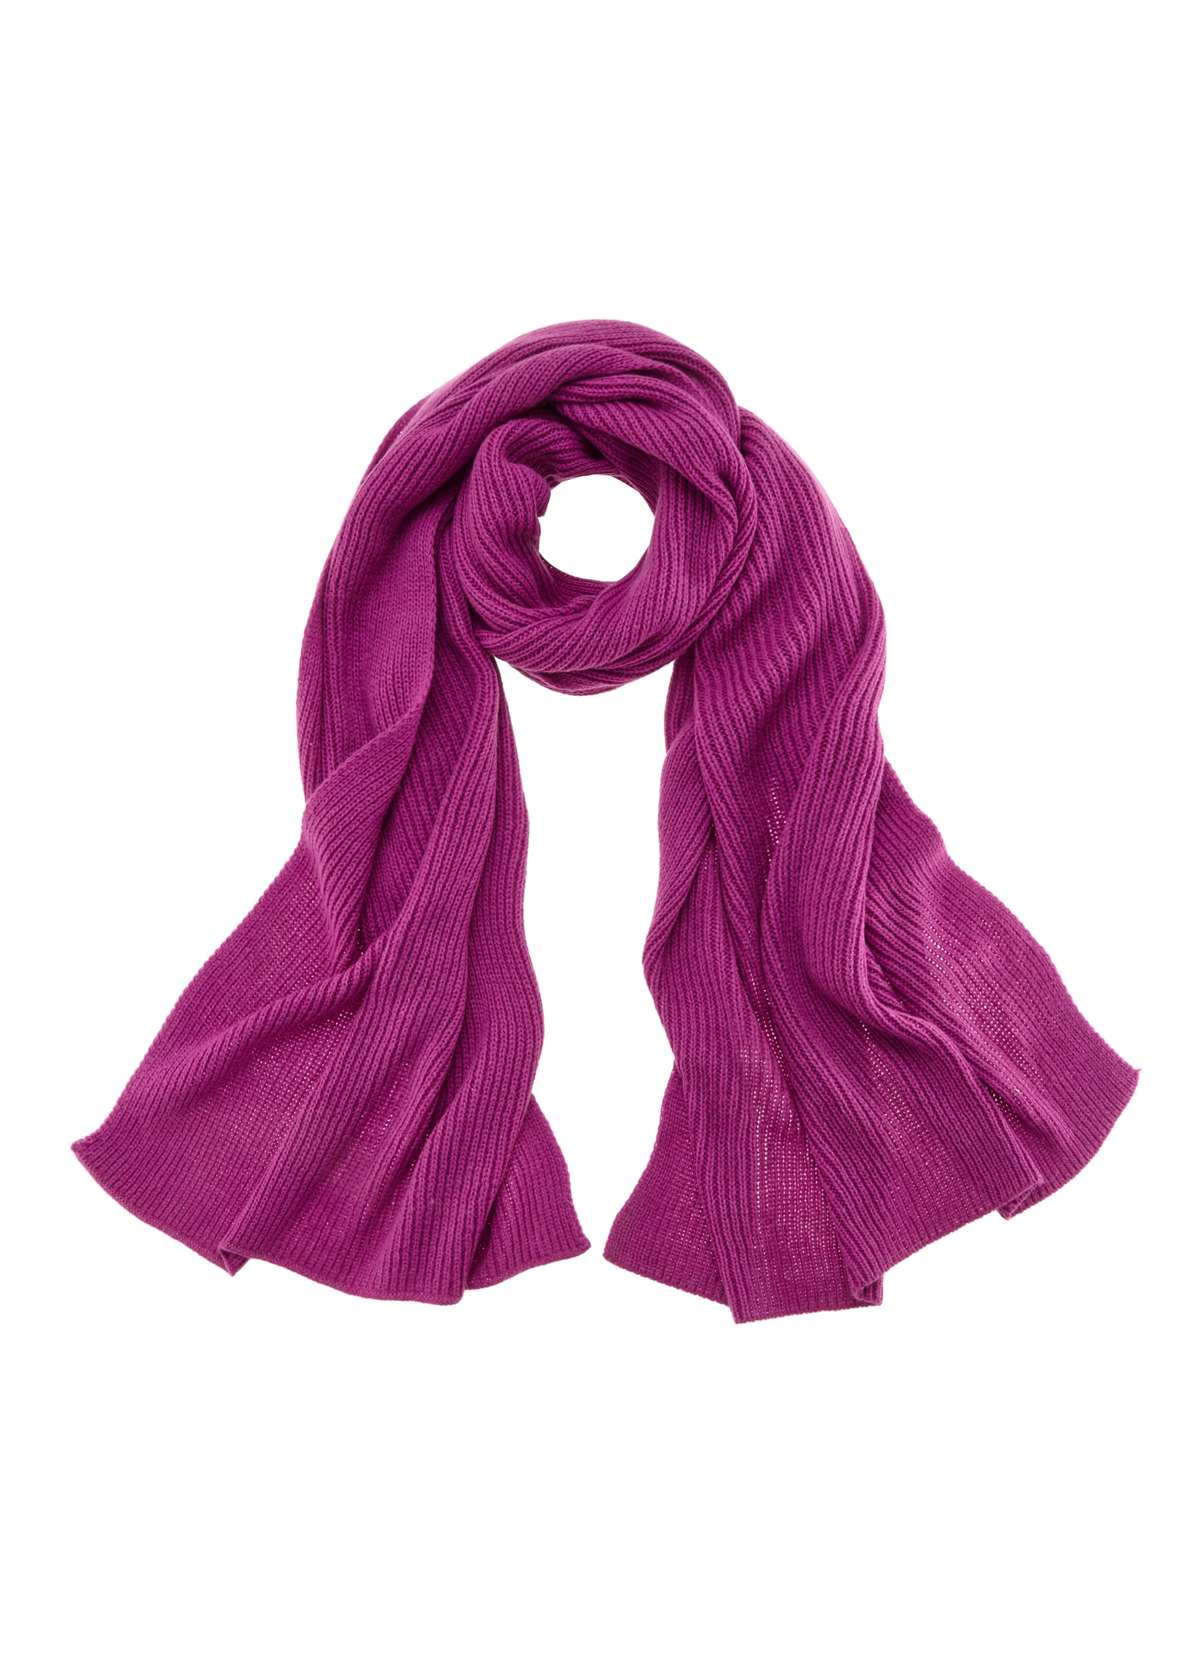 Вязаный шарф из смеси шерсти, шарф из шерсти, зимний шарф, утеплитель для шеи.